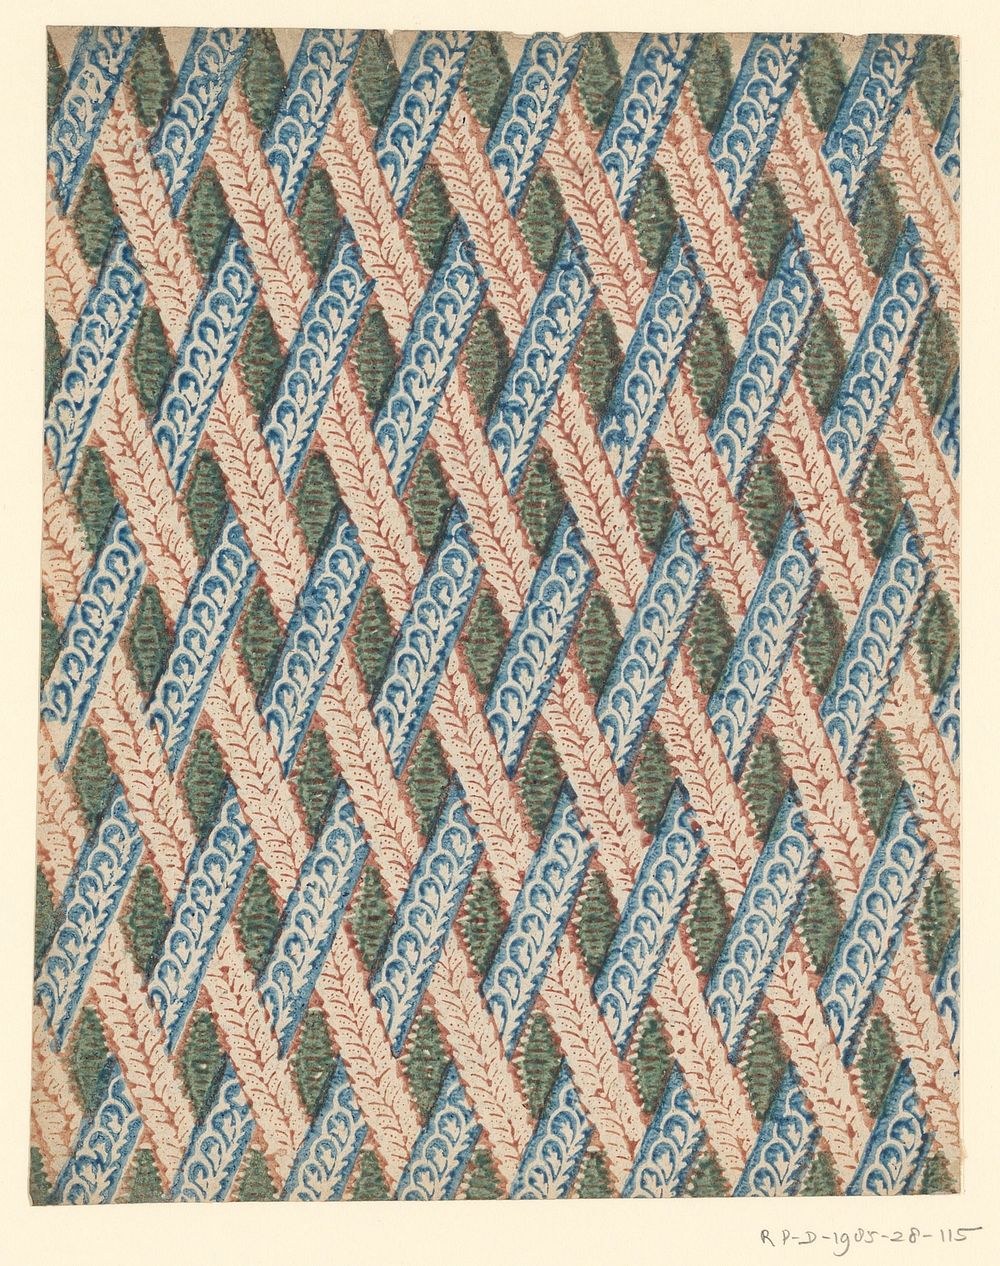 Blad met patroon van geweven diagonale banen (1750 - 1900) by anonymous